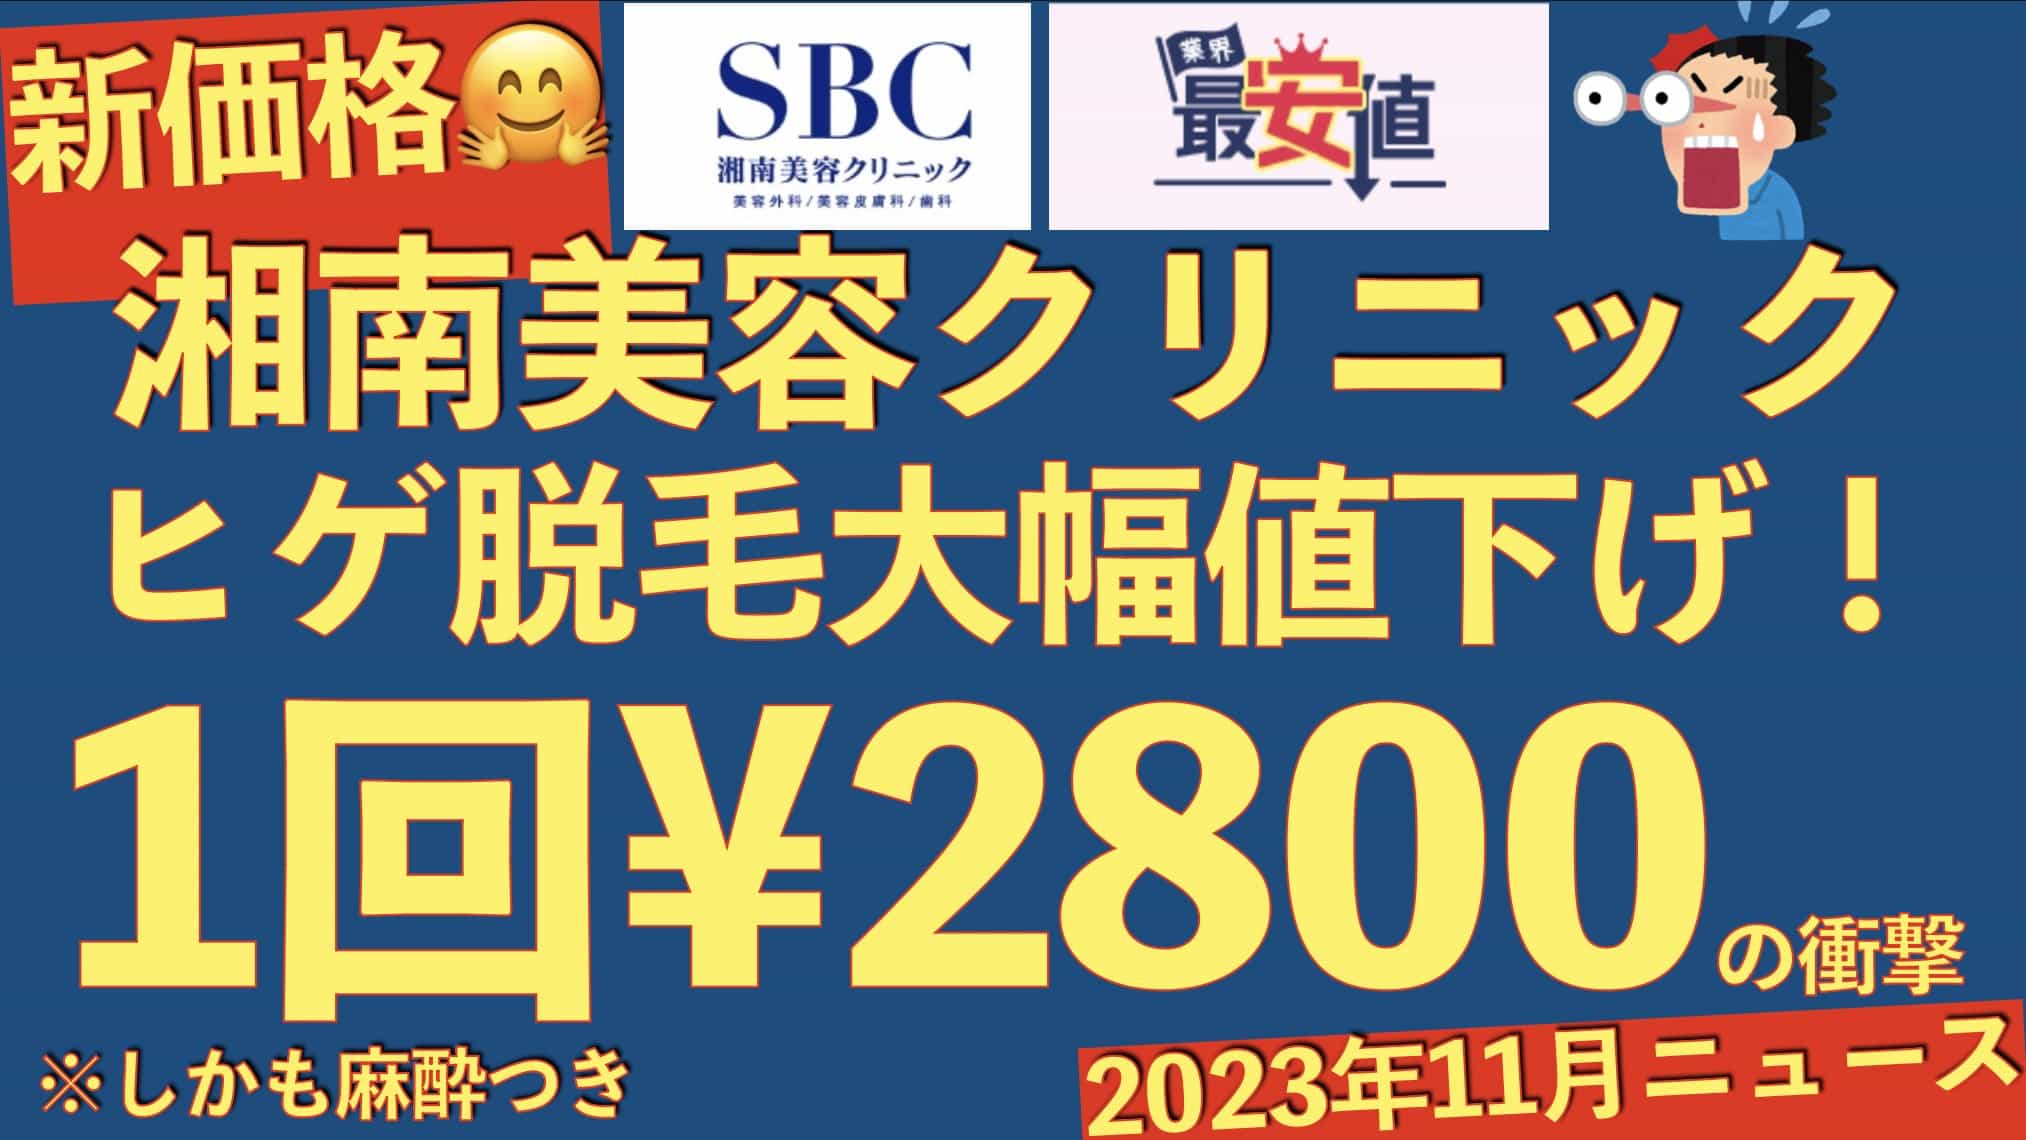 【新価格】湘南美容クリニックのヒゲ脱毛が1回¥2800へ大幅値下げ！2023/11/28最新情報